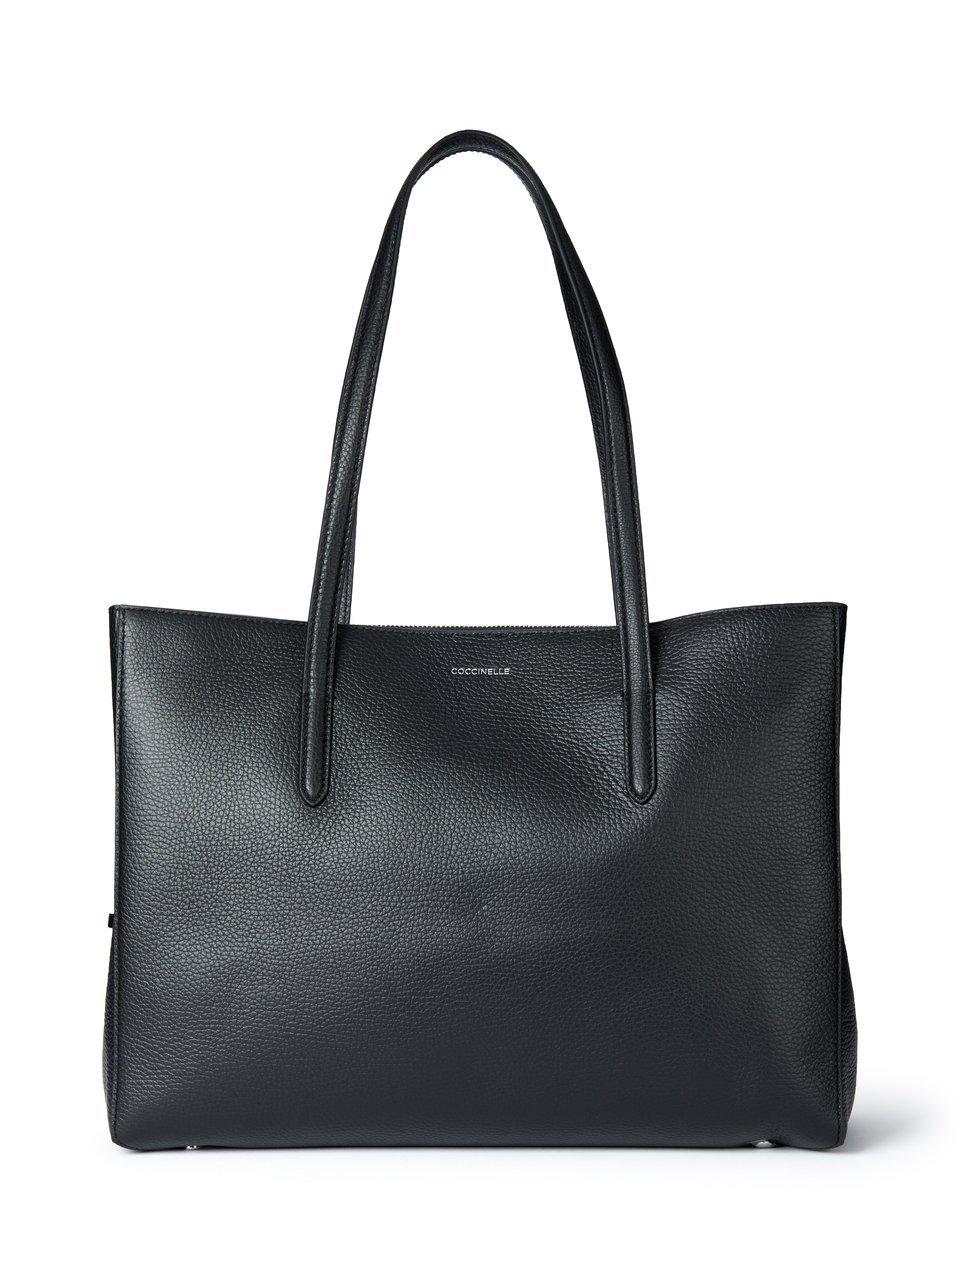 Image of Shopper bag Swap Coccinelle black